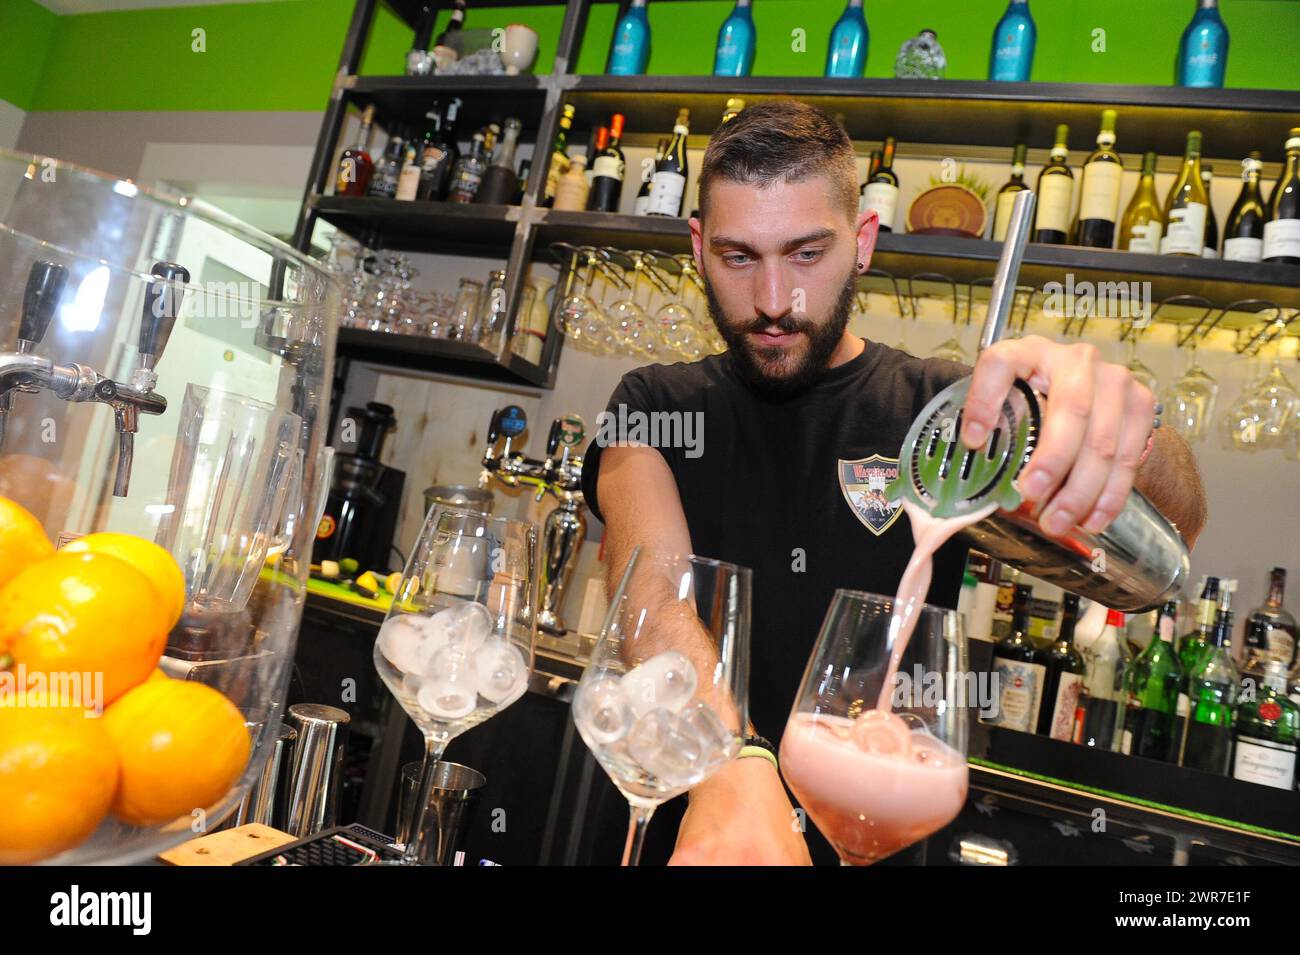 Aperitivo e Apericena e Cocktail in Italia Stockfoto